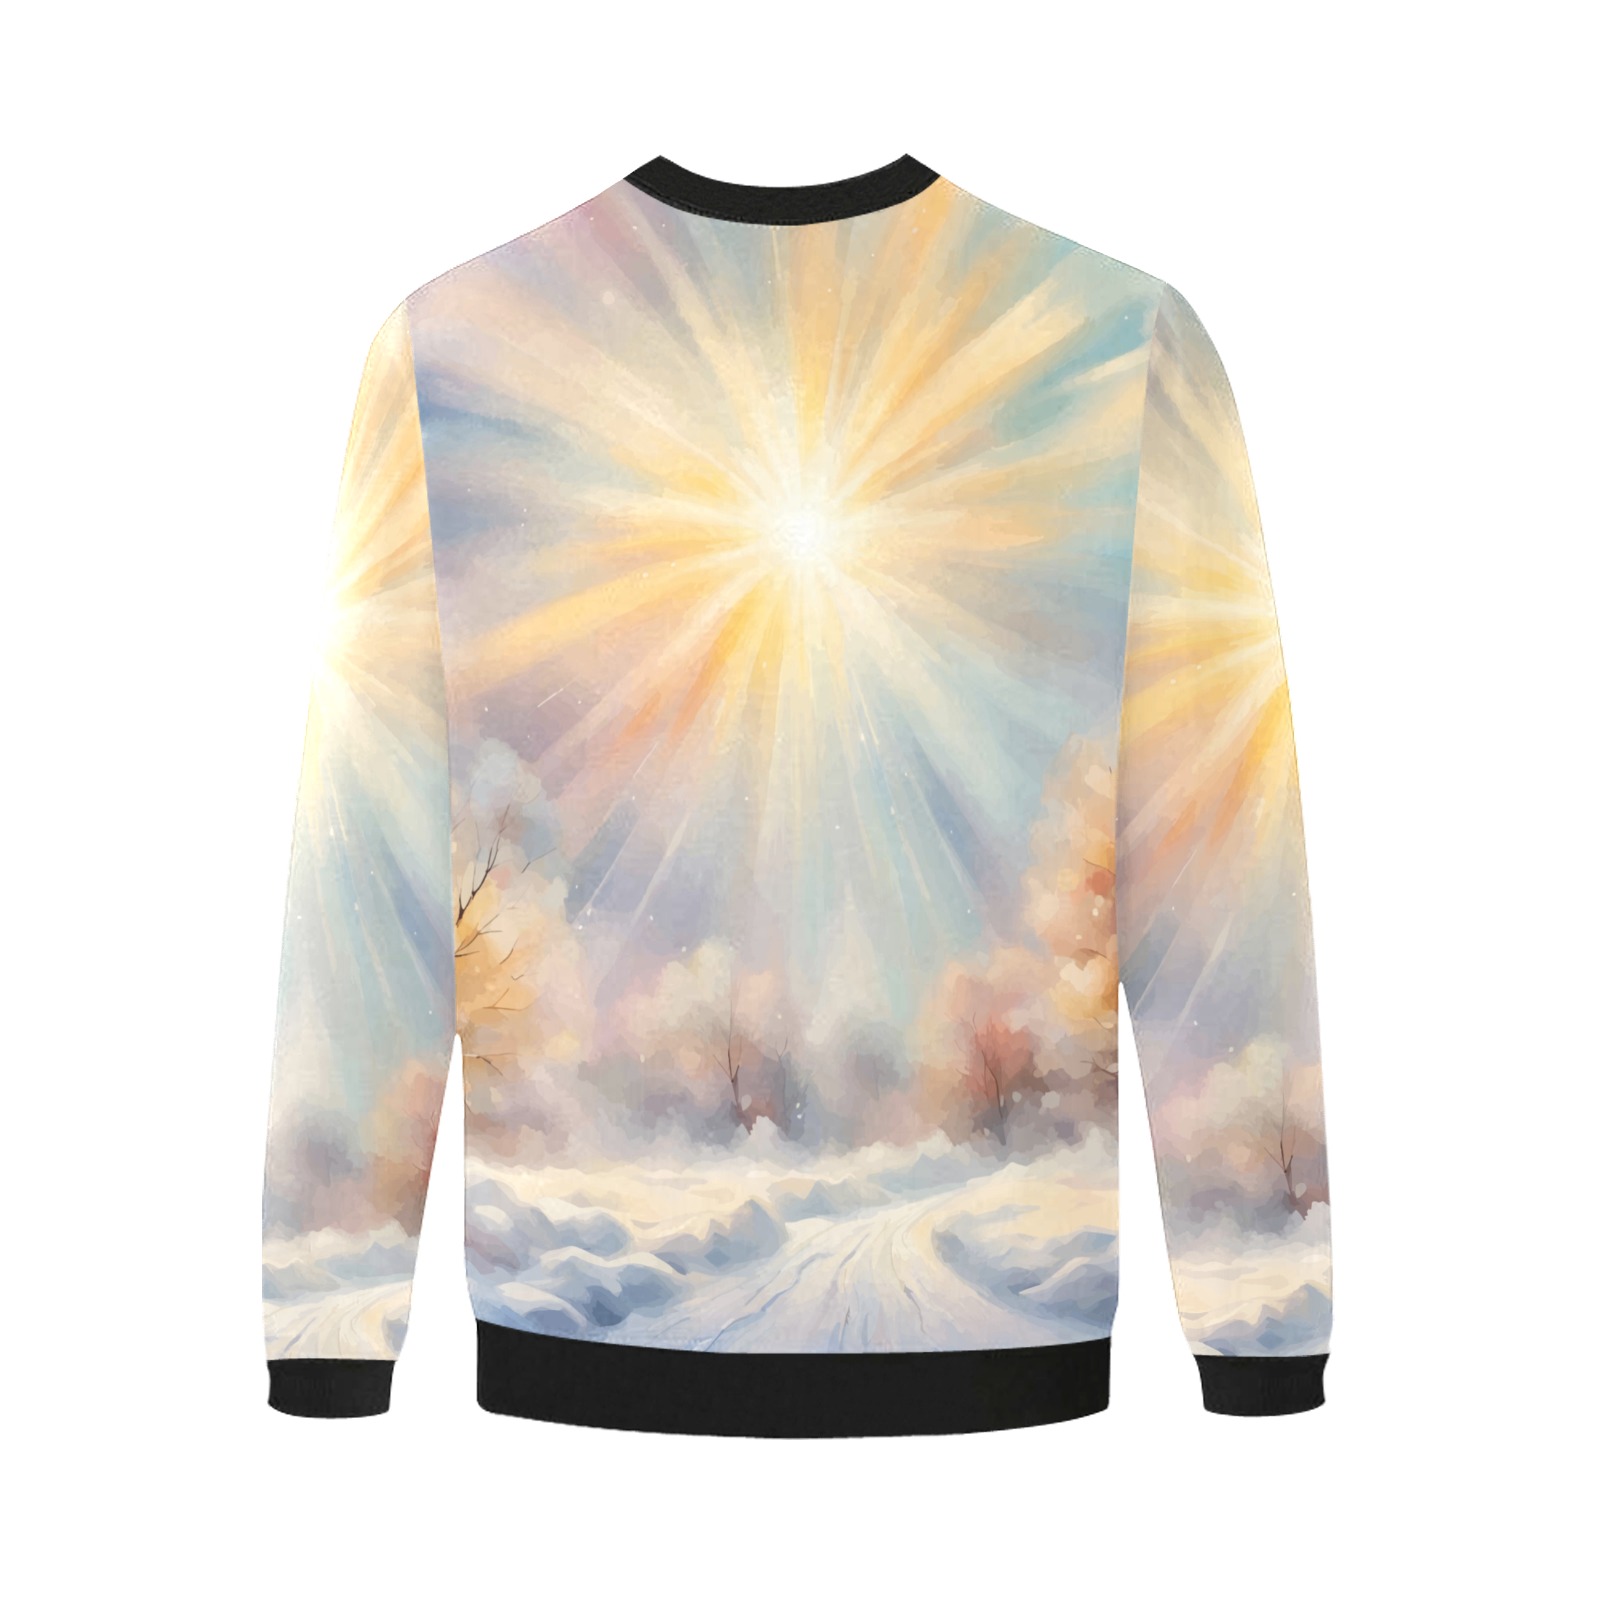 Magical sun is shining over the winter road art Men's Oversized Fleece Crew Sweatshirt (Model H18)